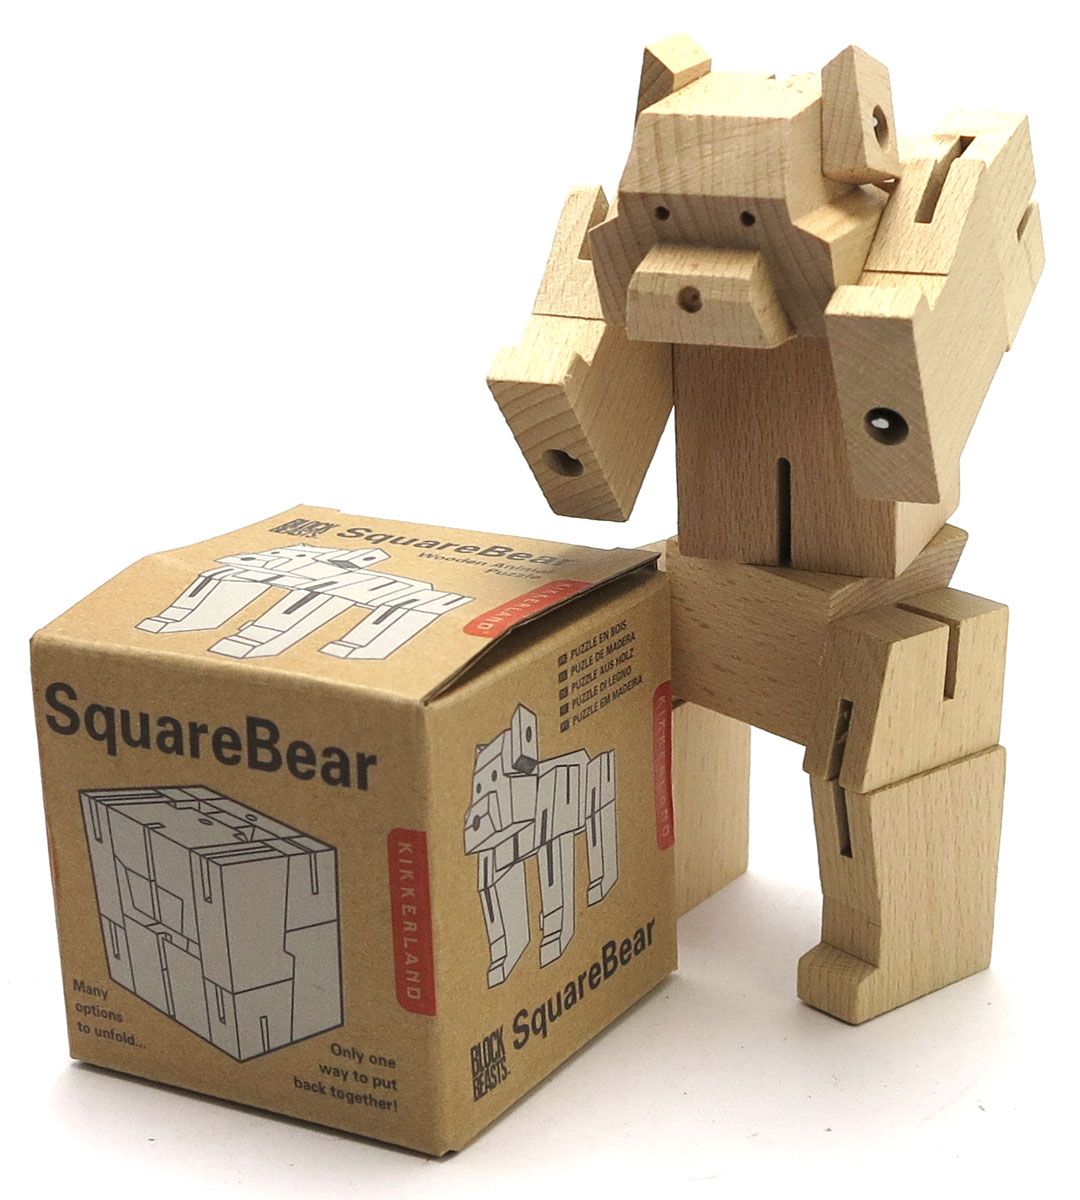 Square Bear